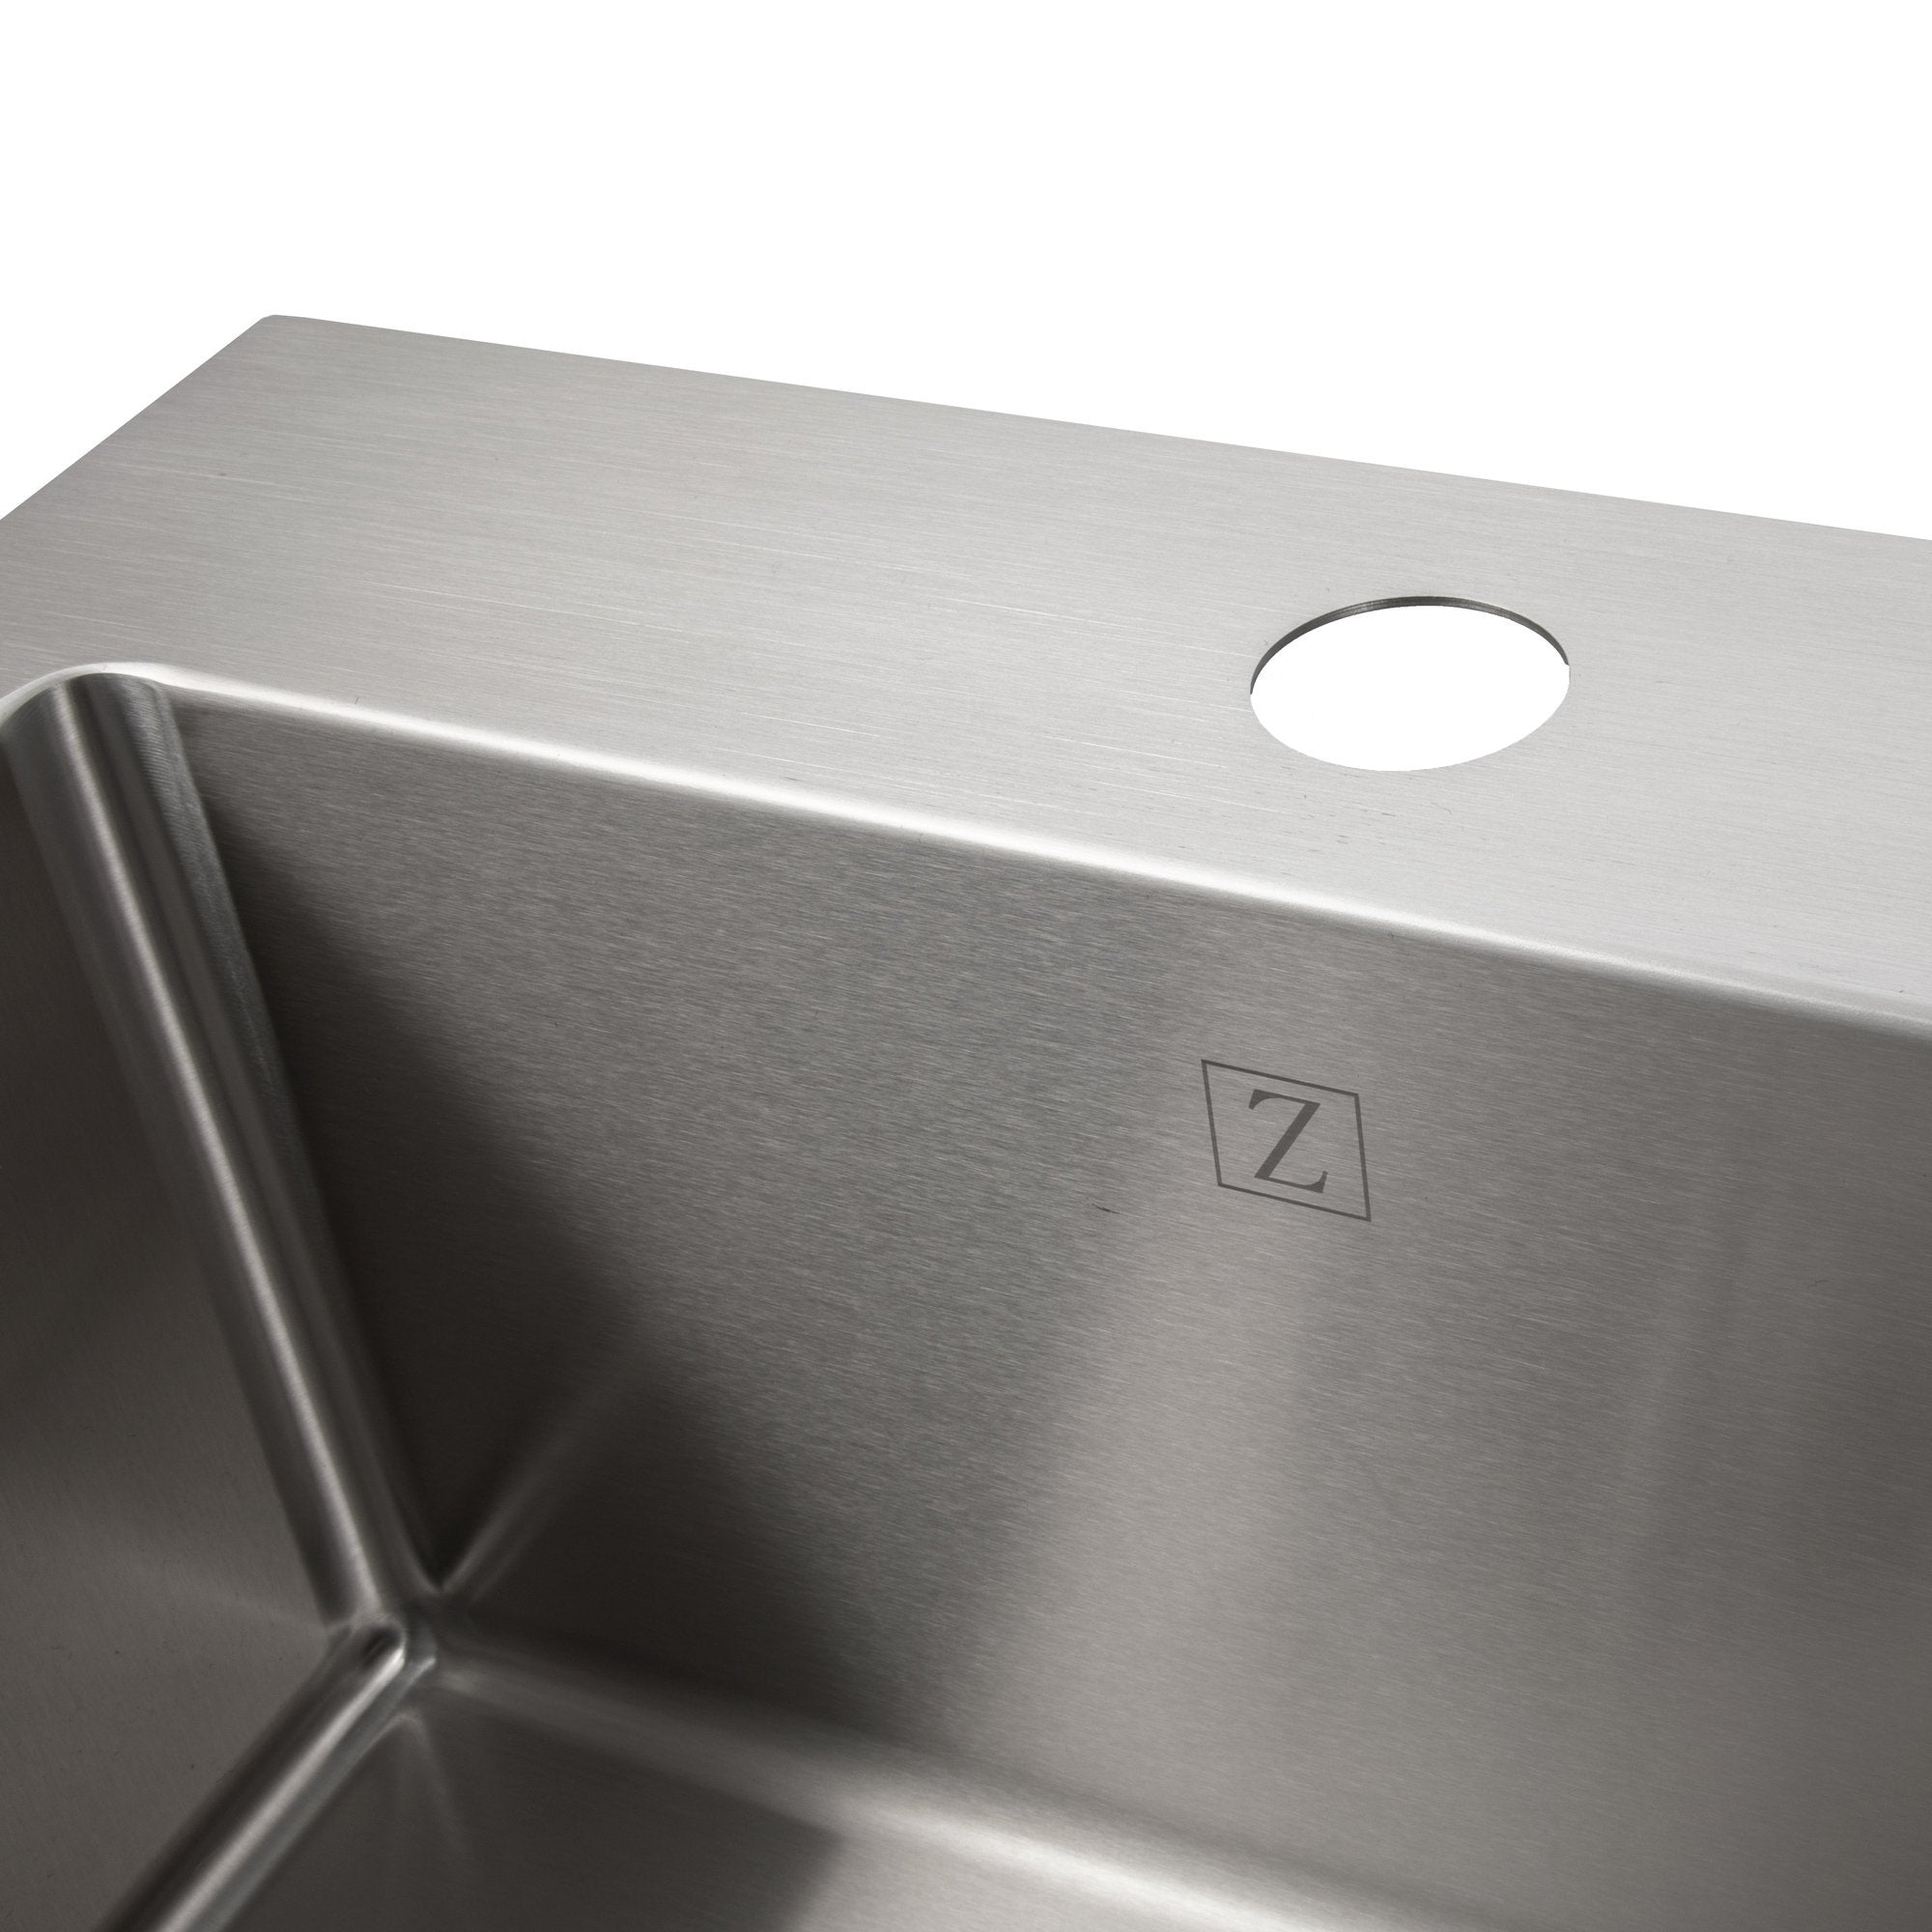 ZLINE 15-inch topmount sink features an engraved ZLINE logo